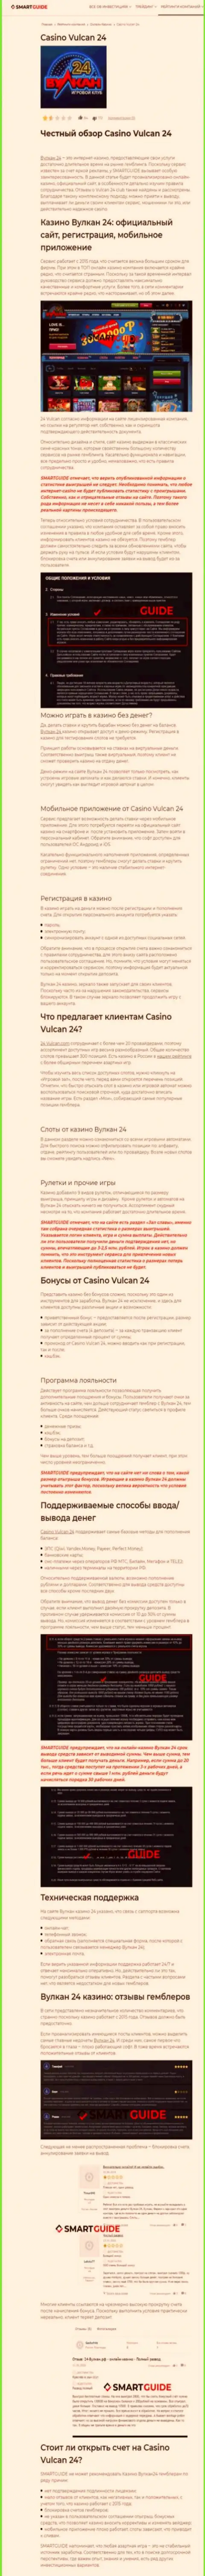 Вулкан 24 - это компания, которая зарабатывает на отжатии финансовых активов реальных клиентов (обзор мошеннических действий)